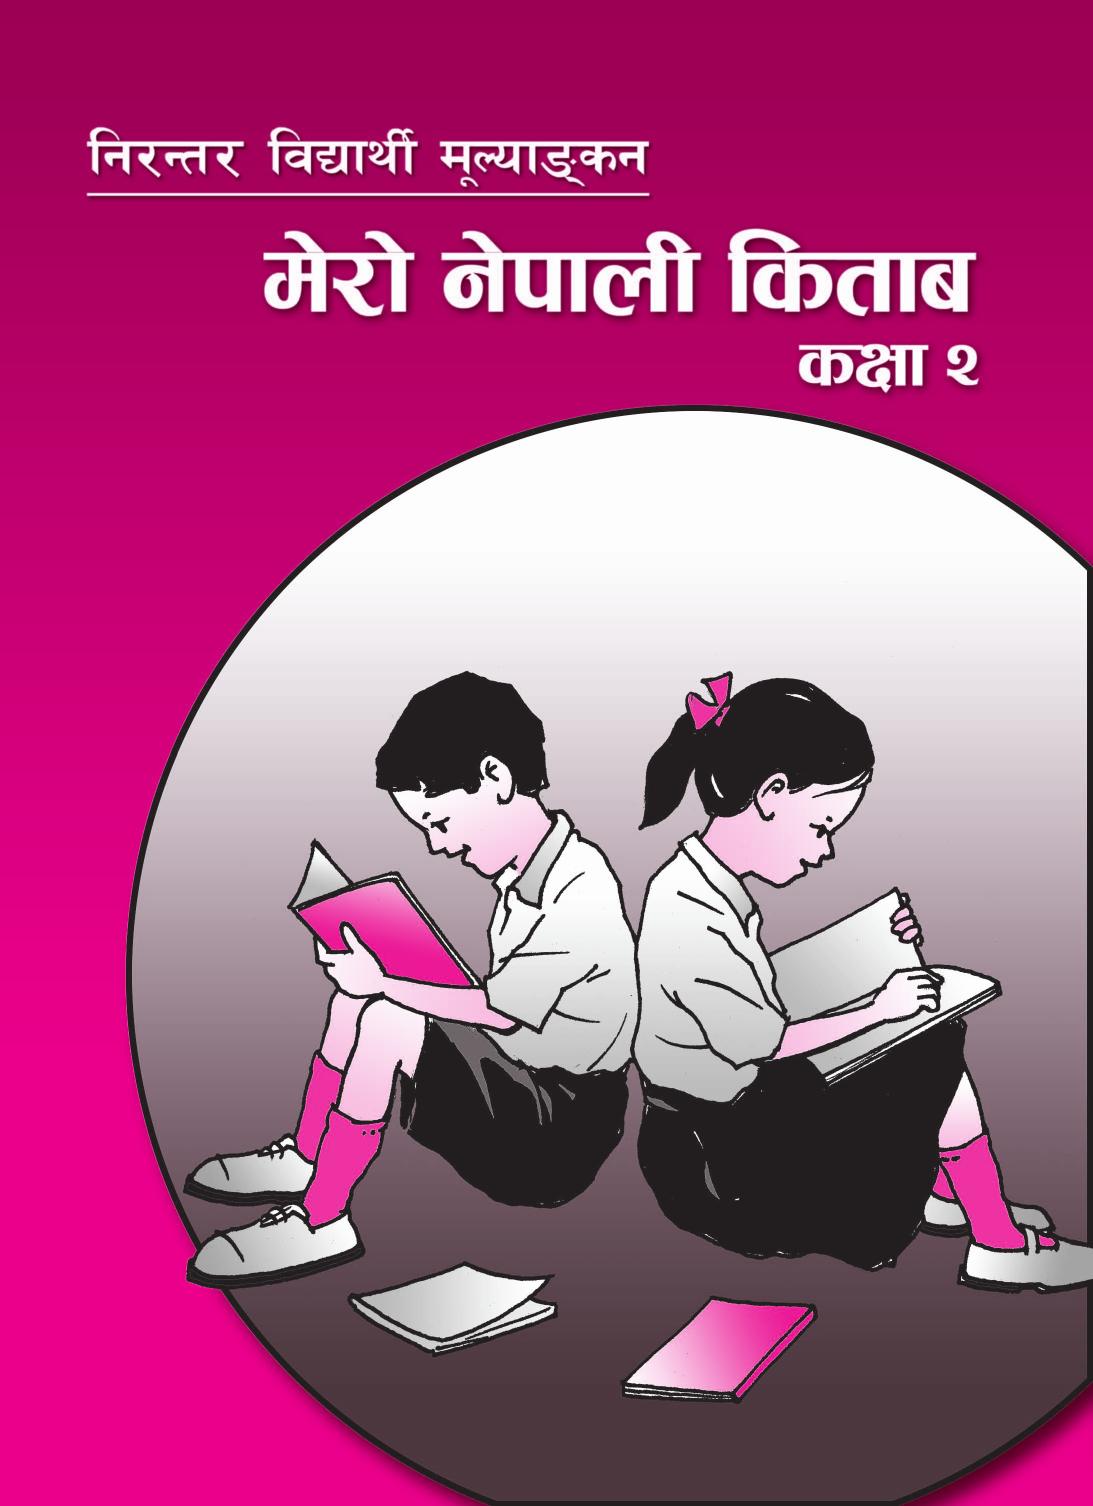 मेरो नेपाली किताब कक्षा २